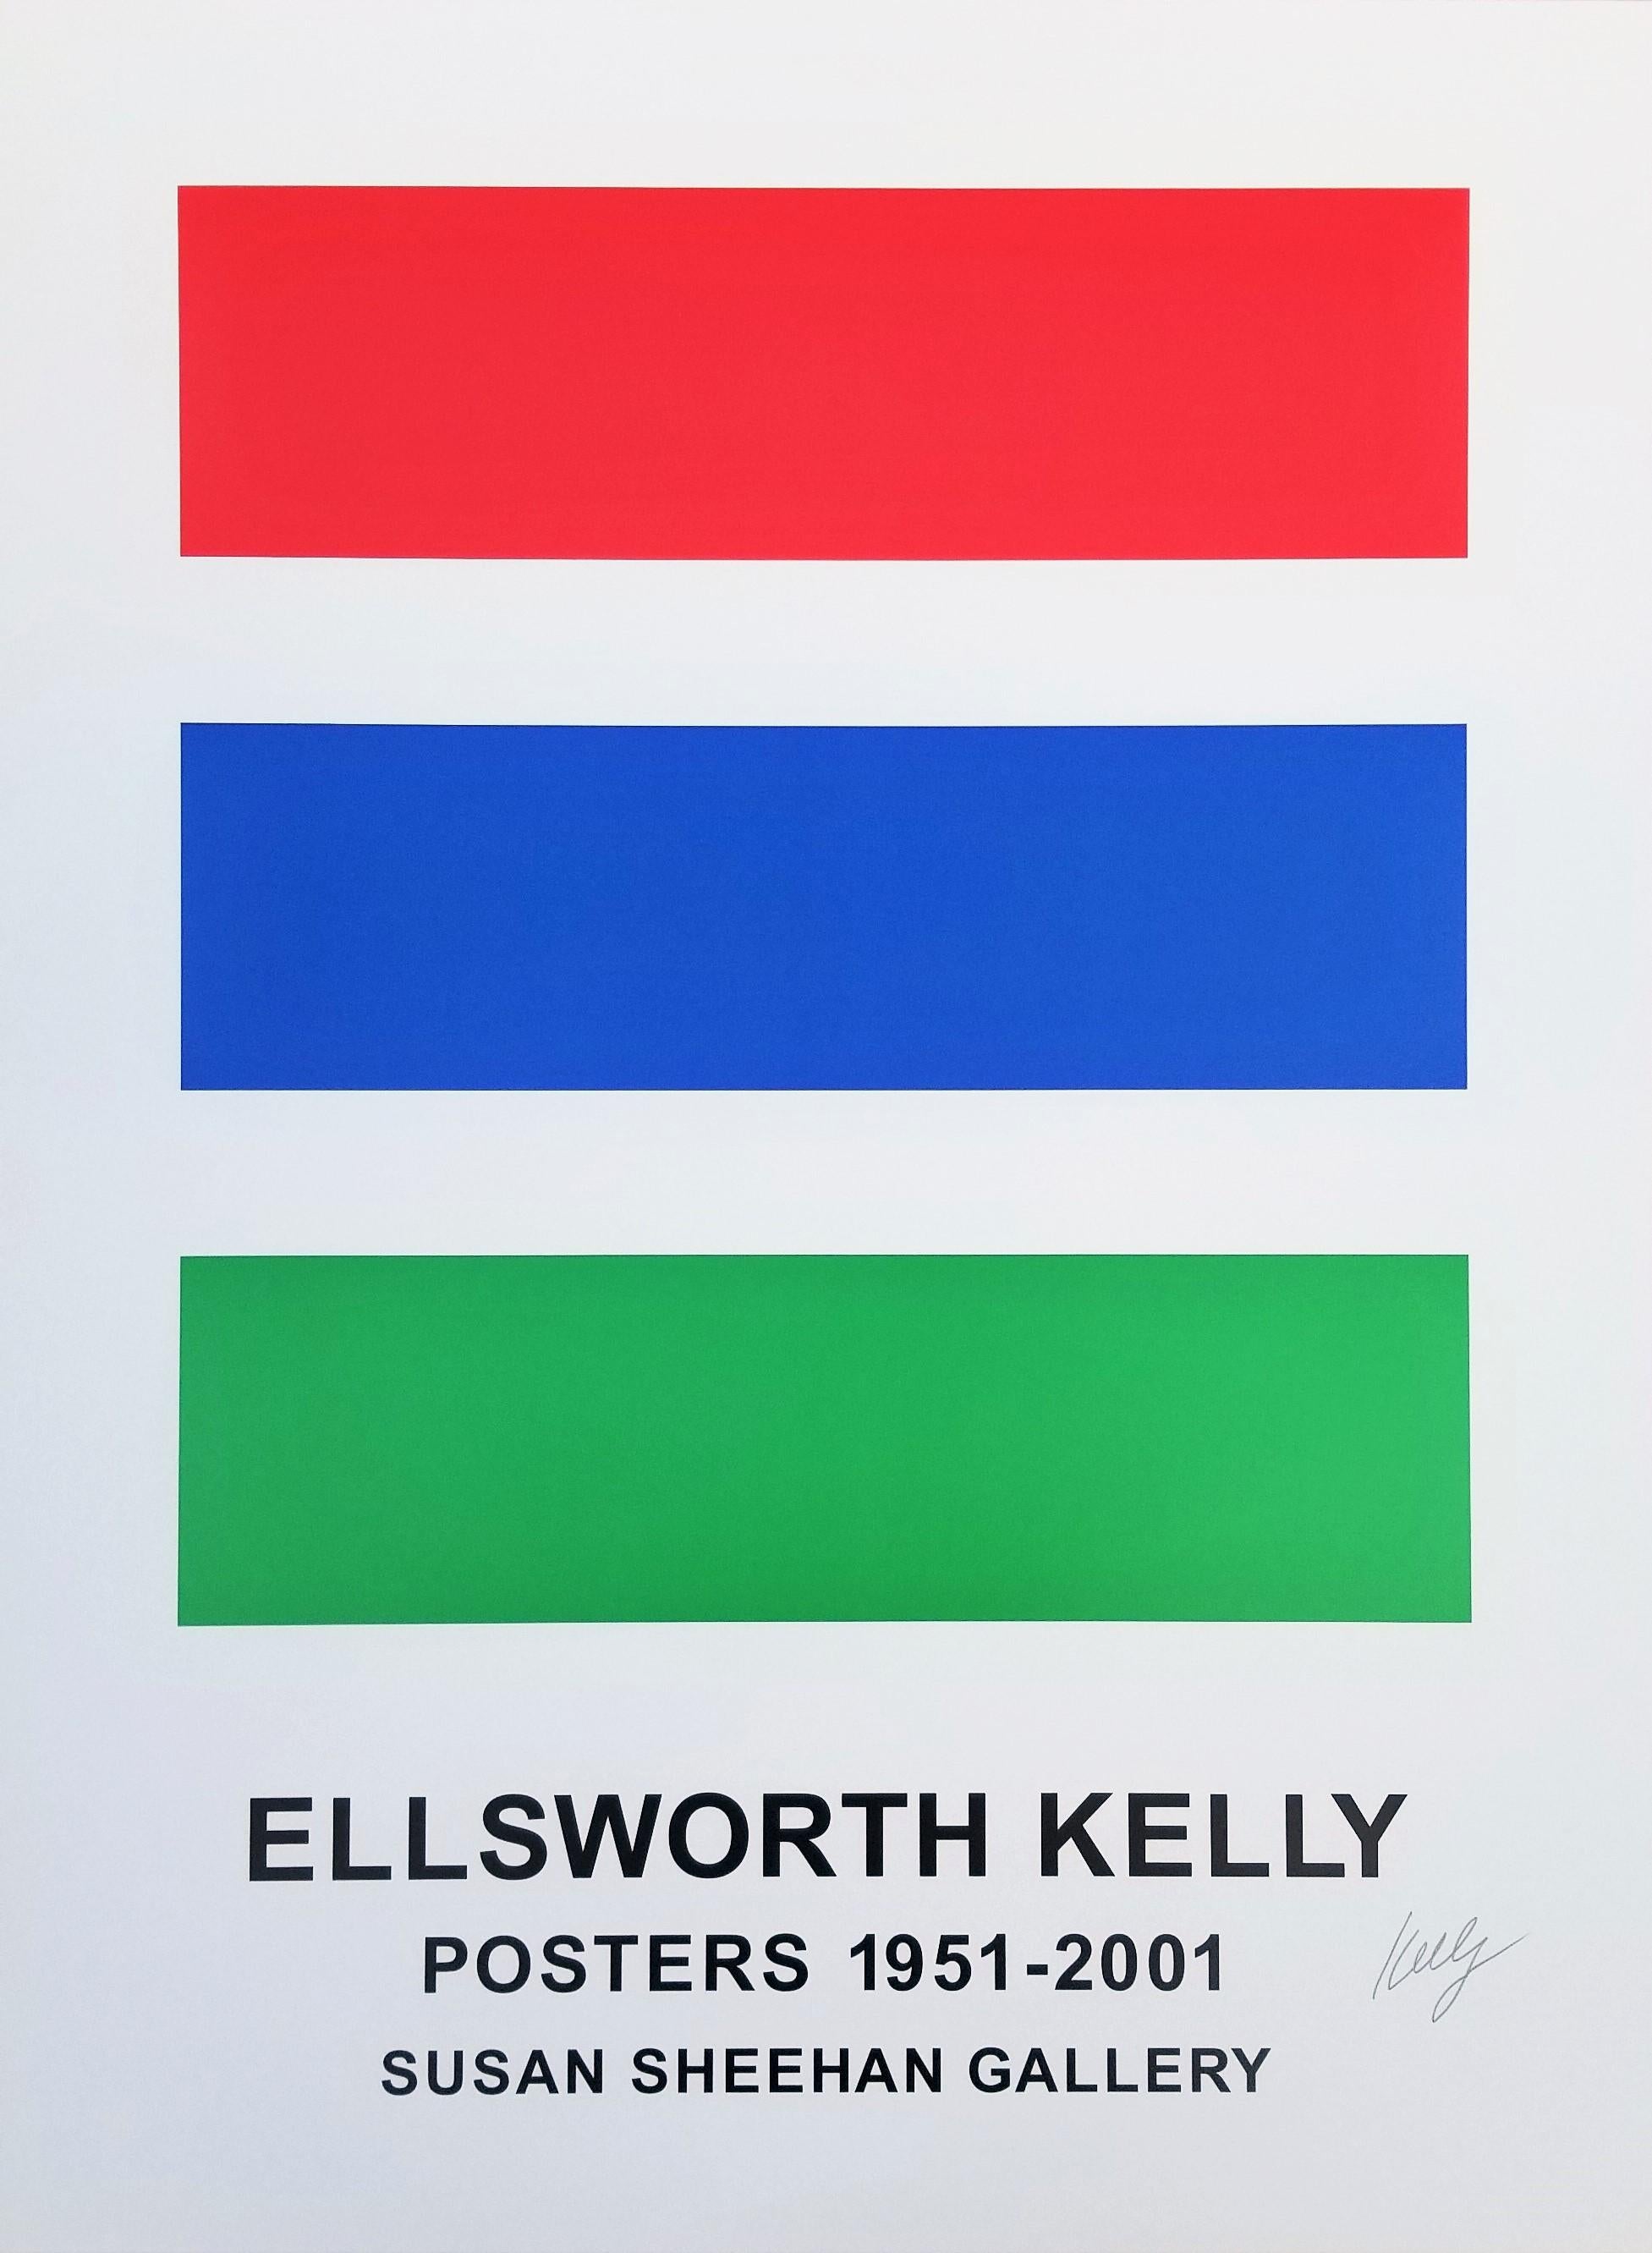 Artistics : Ellsworth Kelly (américain, 1923-2015)
Titre : "Susan Sheehan Gallery (Ellsworth Kelly Posters 1951-2001)"
*Signé par Kelly au crayon en bas à droite
Année : 2001
Support : Lithographie originale, affiche d'exposition sur papier vélin